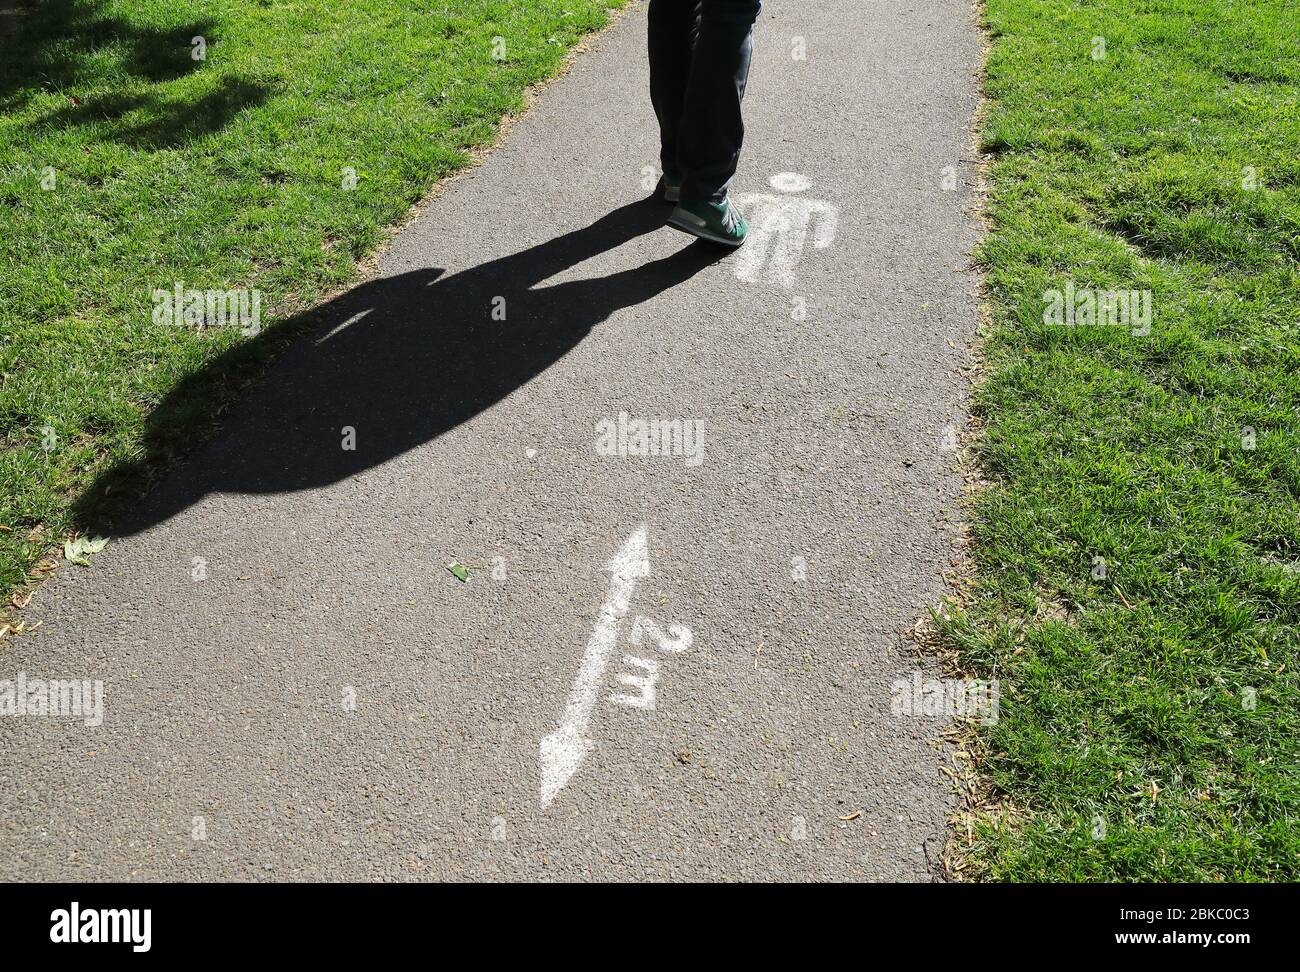 Mesures de distanciation sociale dans les parcs d'Islington à Londres, pendant le verrouillage de la pandémie de coronavirus, Royaume-Uni Banque D'Images